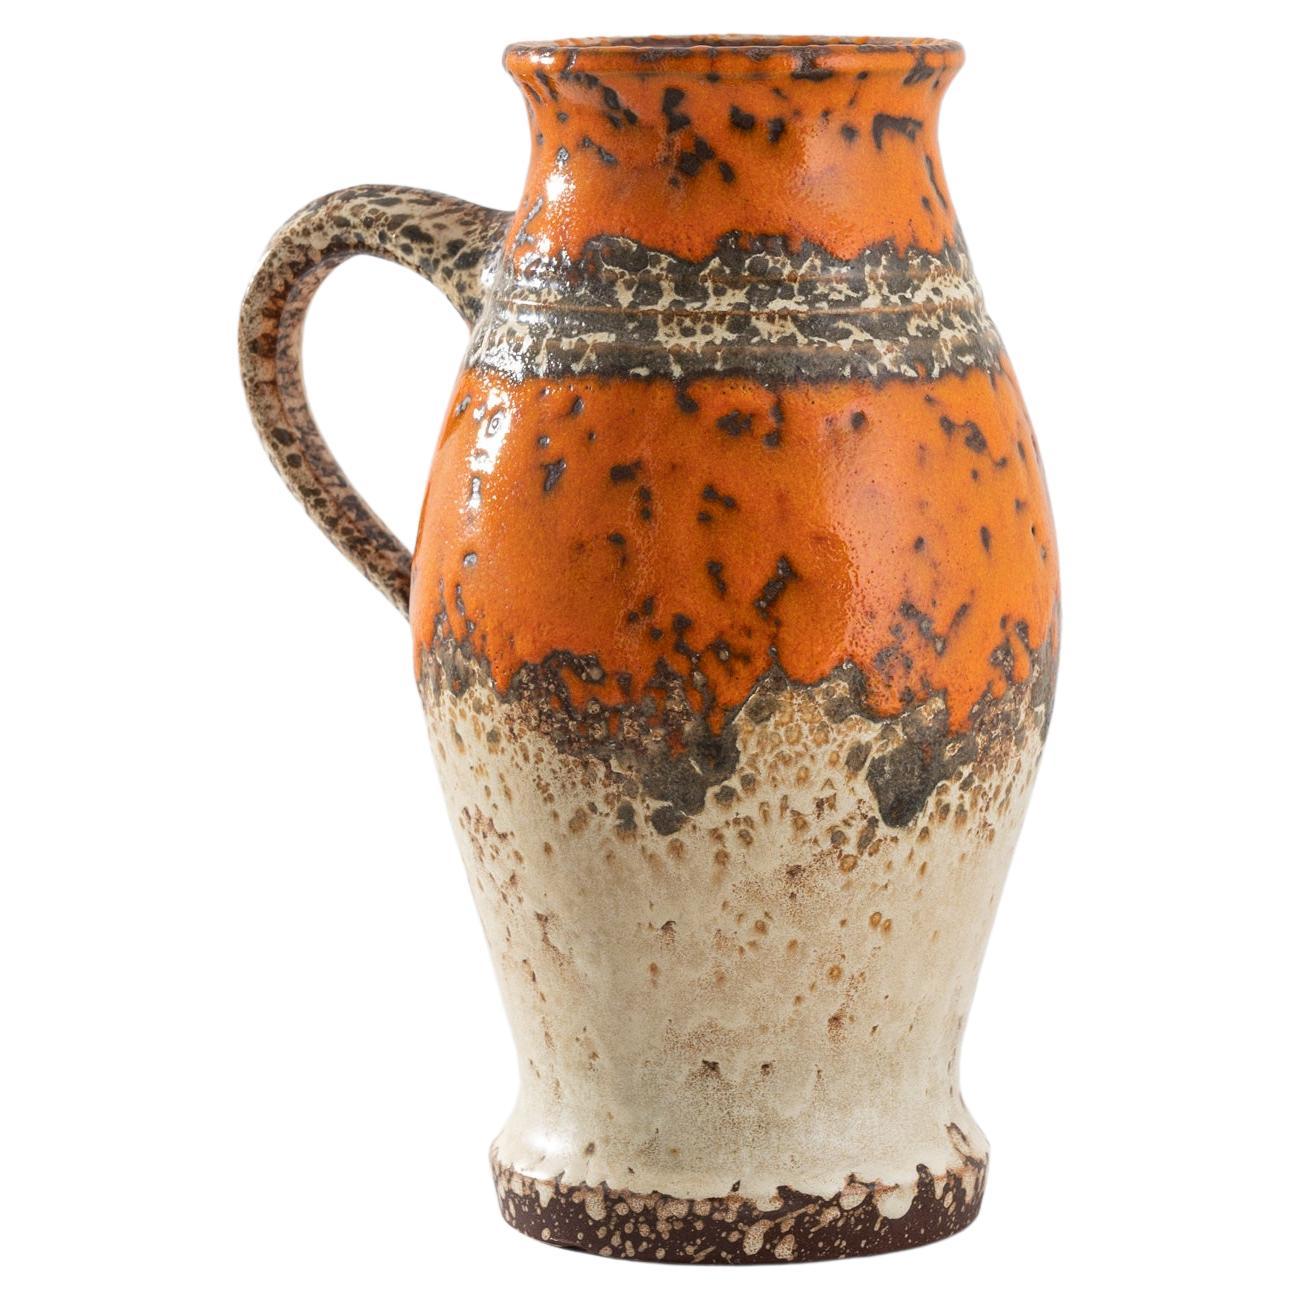 1960s German Ceramic Vase